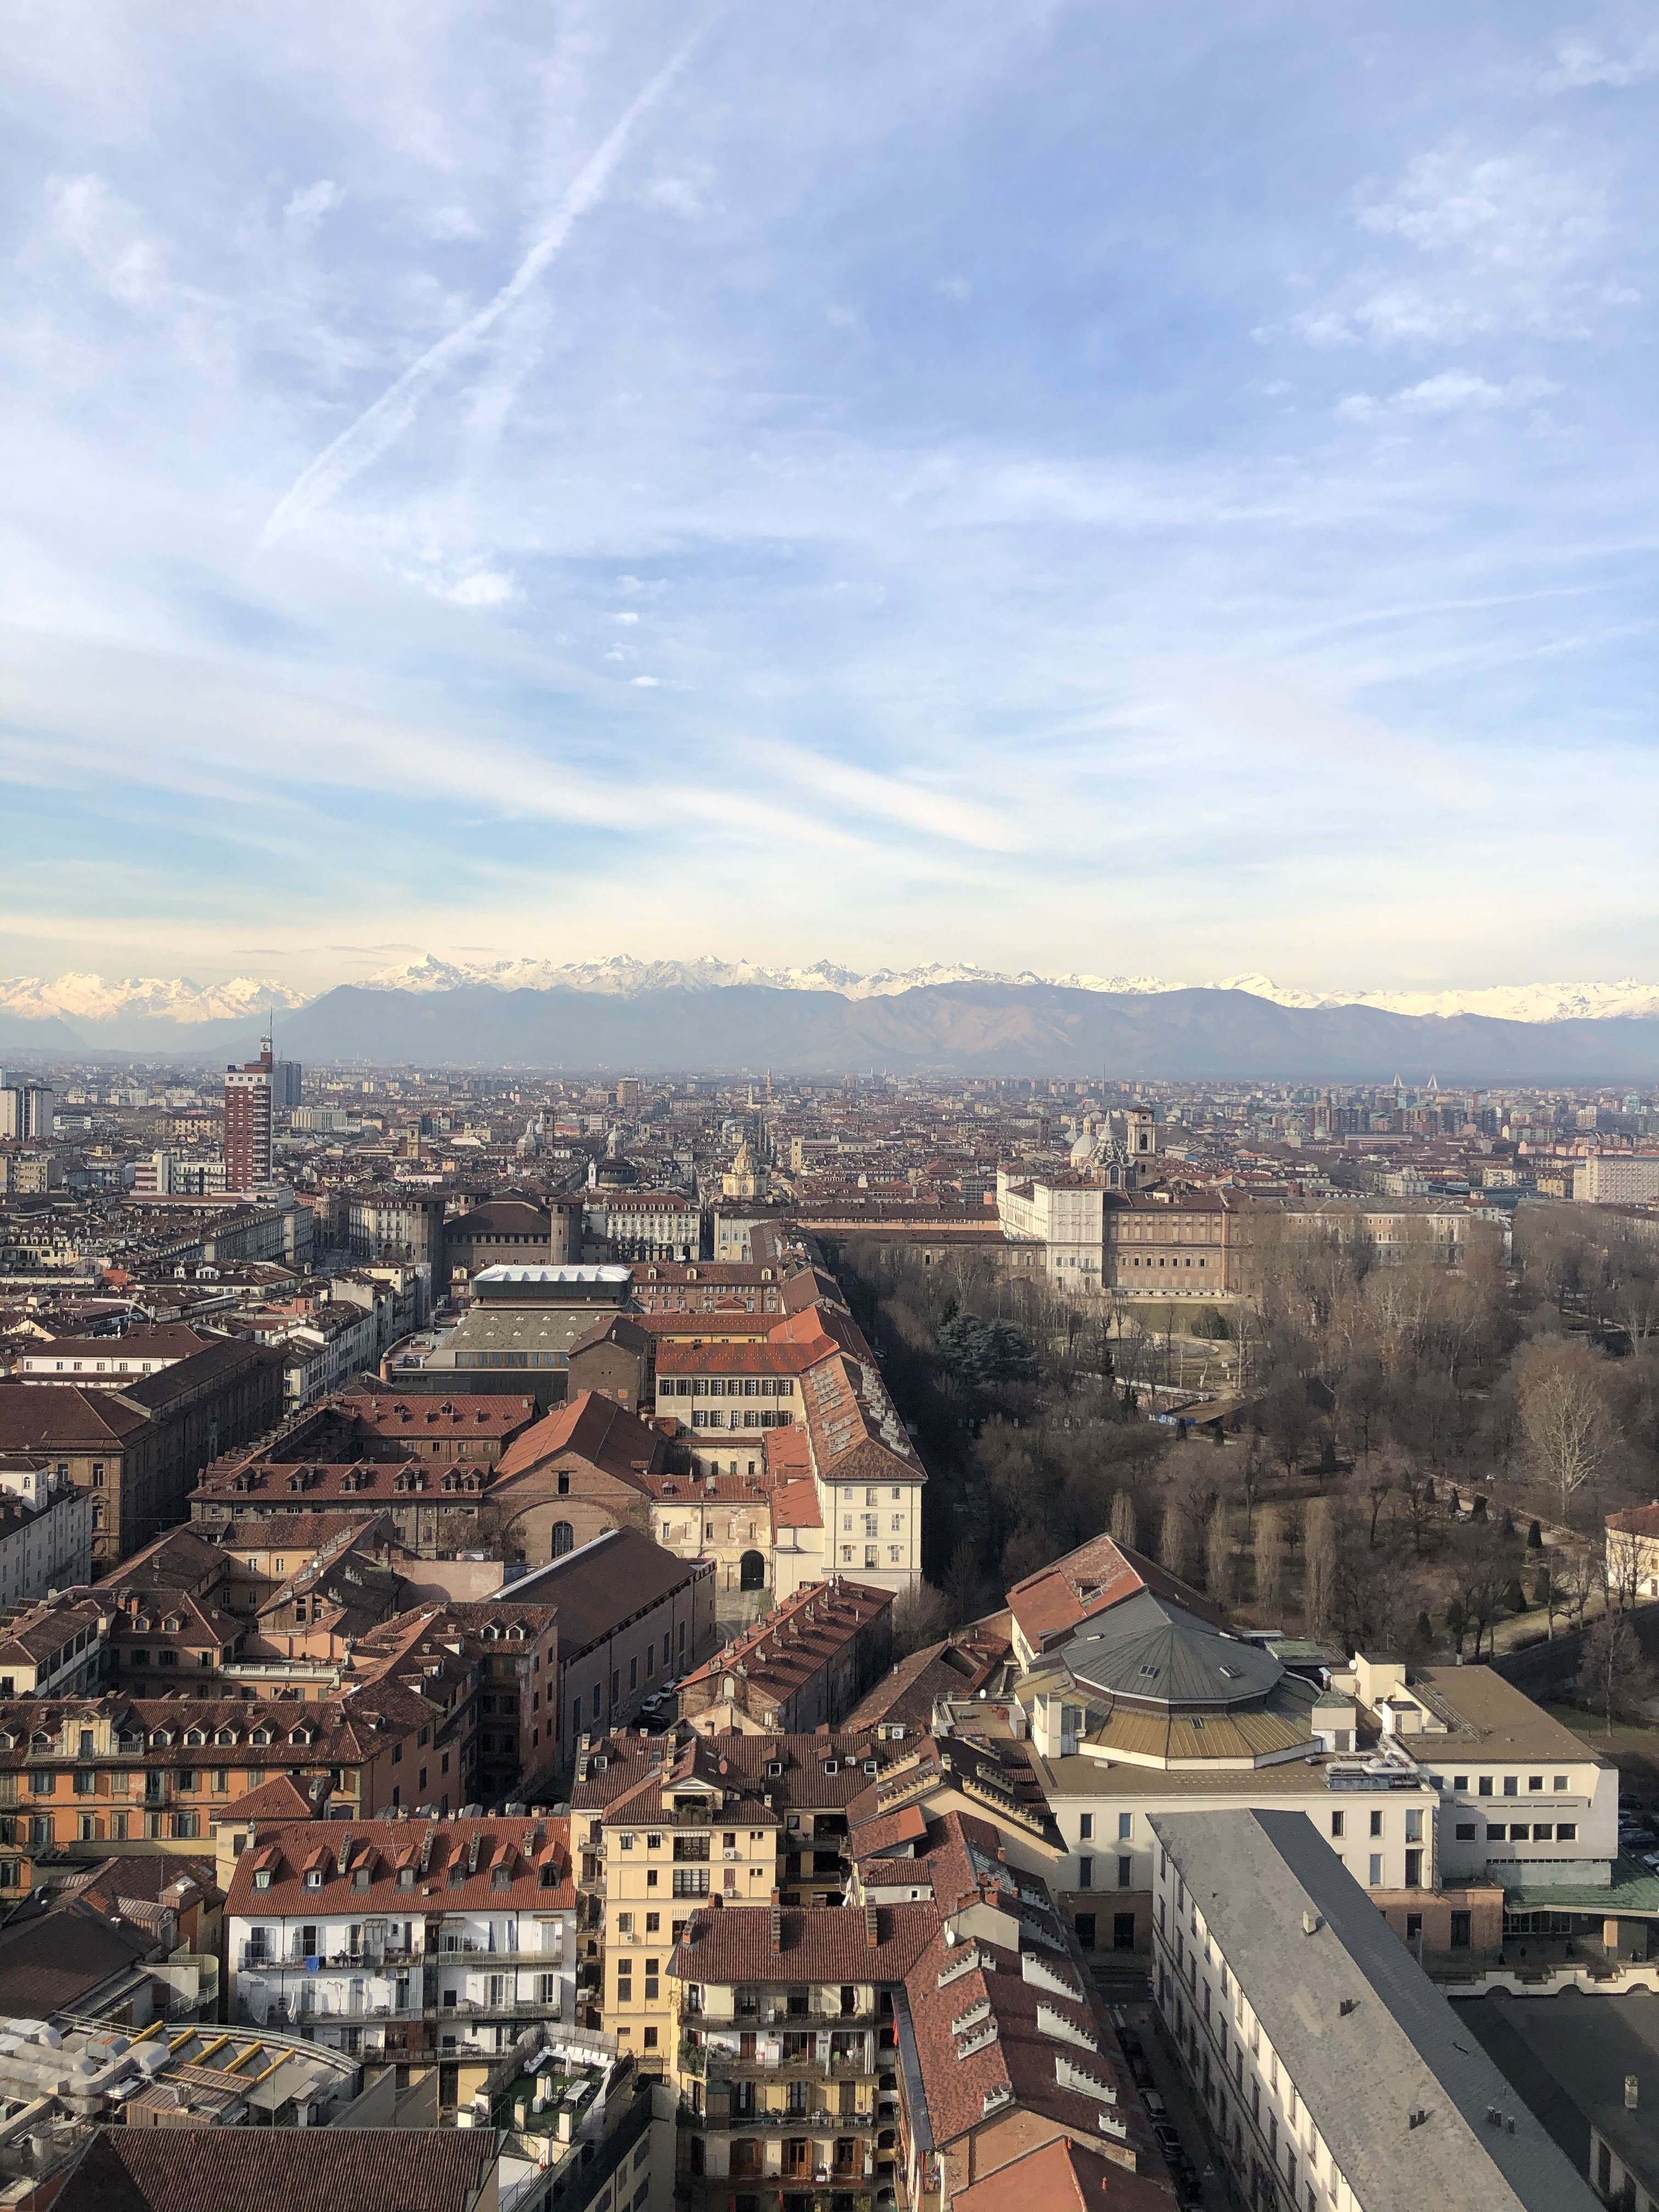 City View of Torino